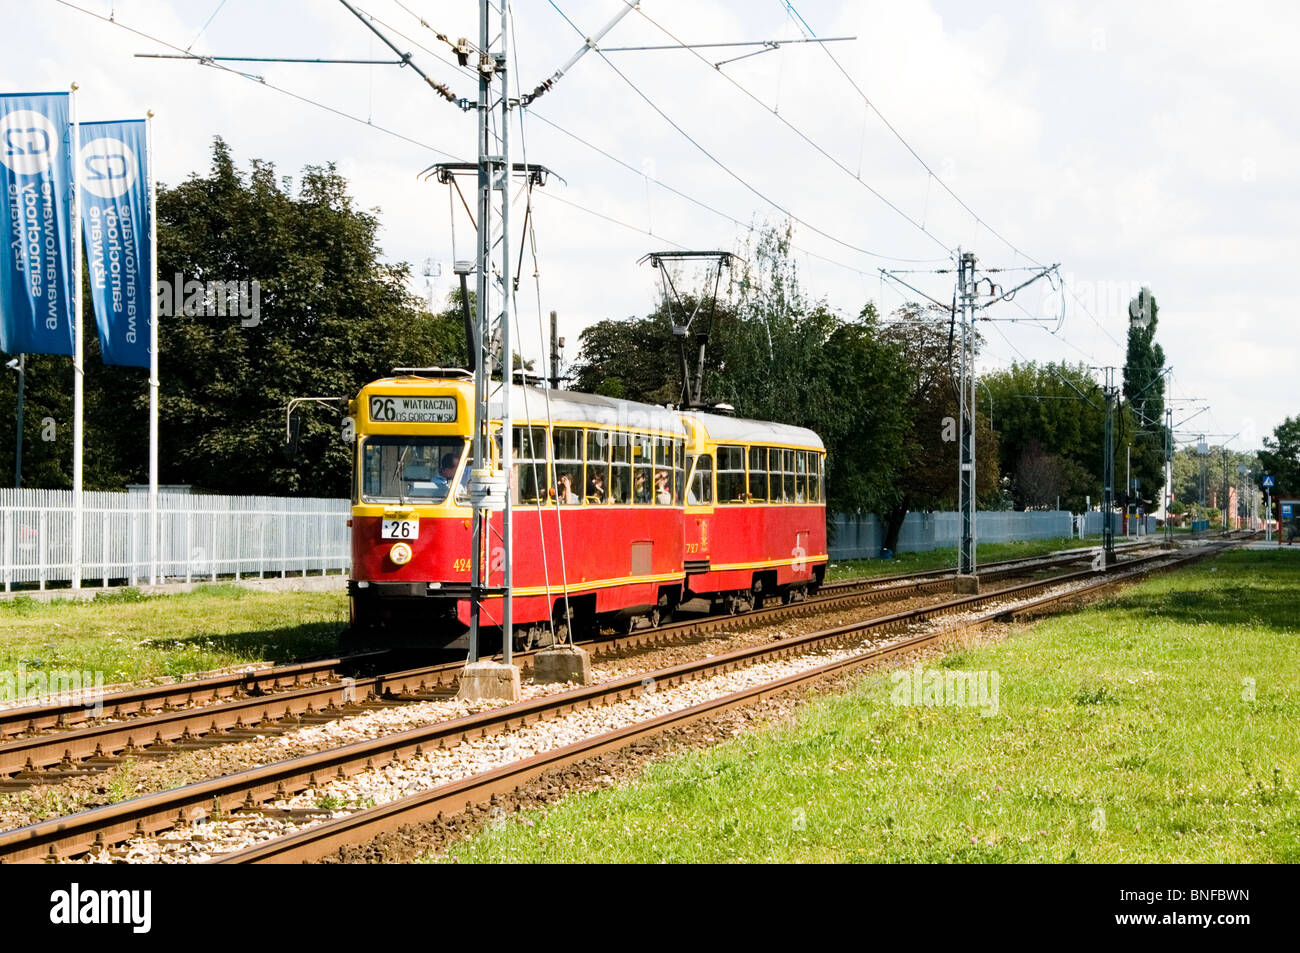 Rote Straßenbahn, Tramwaj eine ÖPNV-Seilbahn in Warschau, Masowien Provinz, Polen, EU Stockfoto